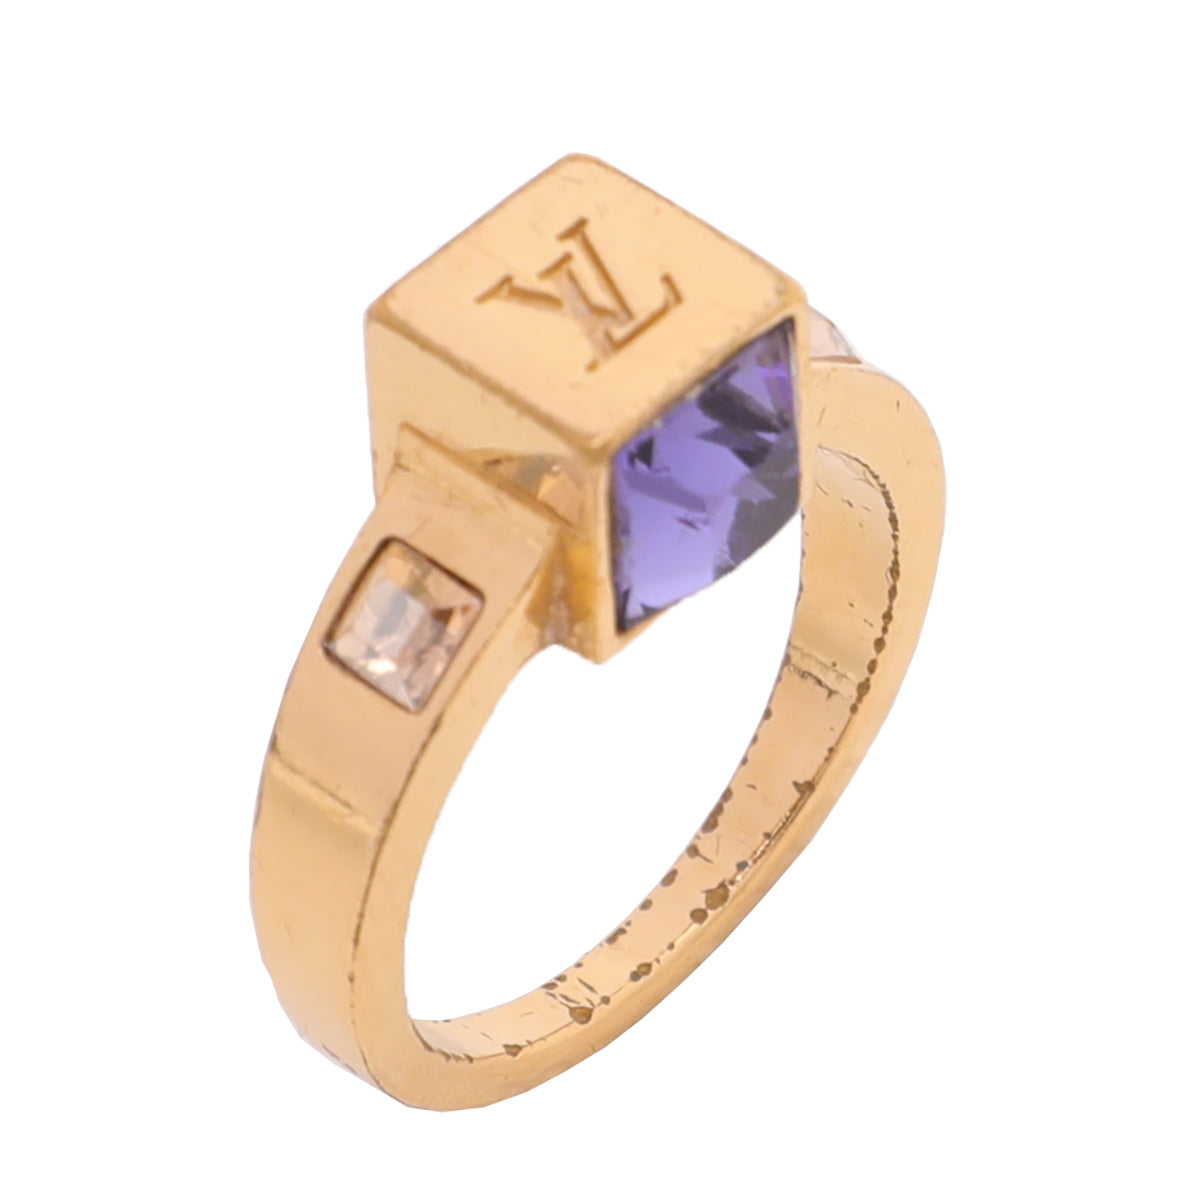 Louis Vuitton] Louis Vuitton Bark Gambling M65097 Ring / Ring Gold